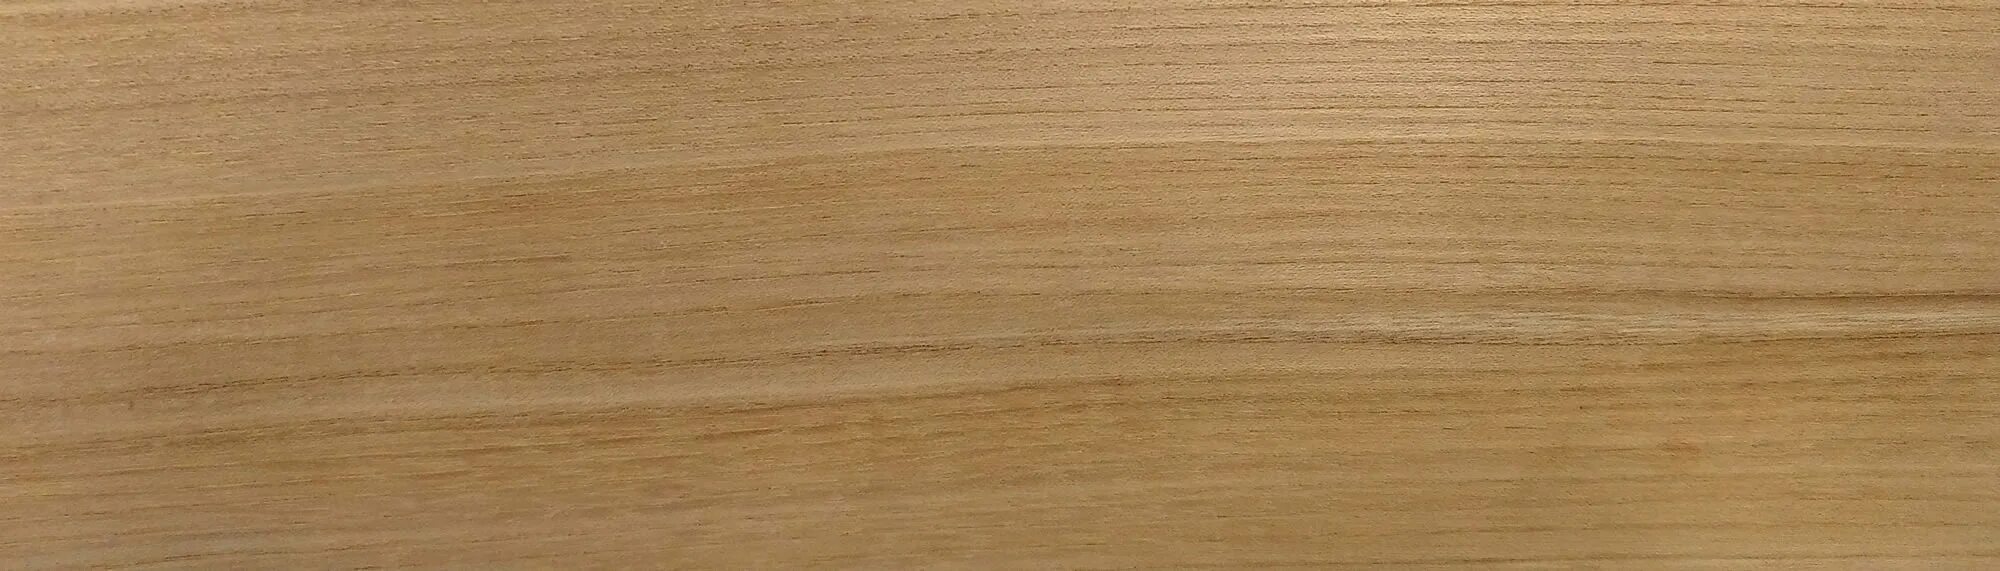 Brown 18. Cersanit Wood коричневый. Олмо натуральный 20x120 cm. Церсанит Вудленд. Ткань Olmo Brown.